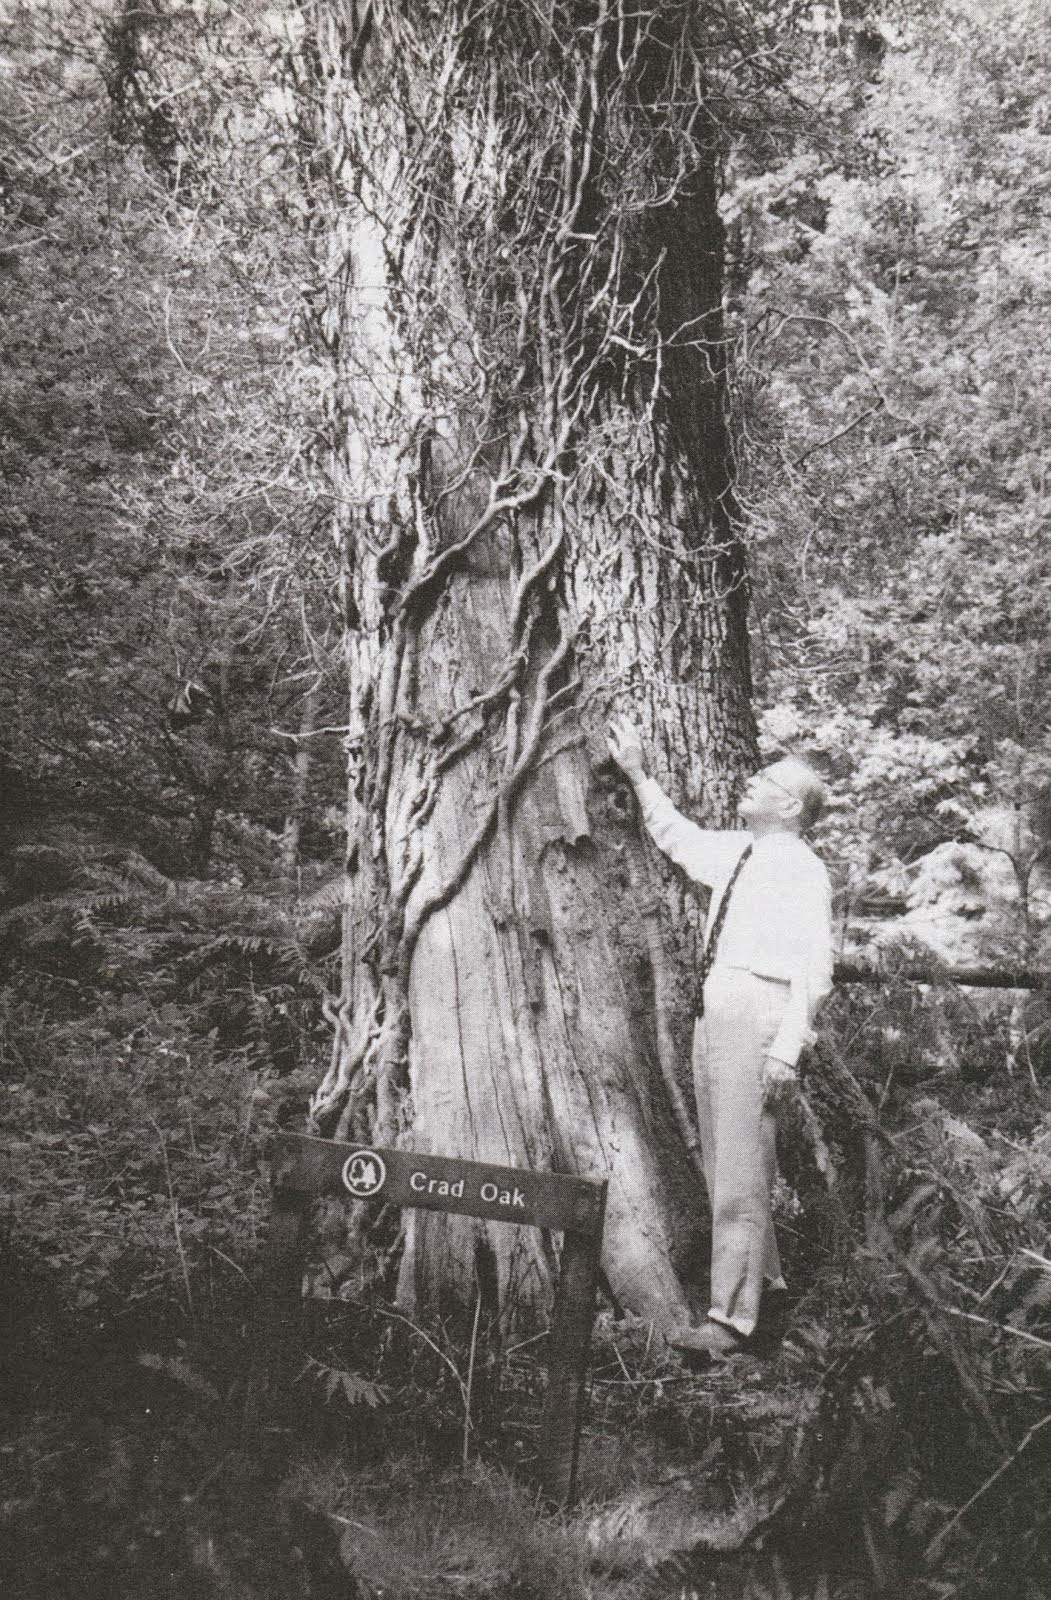 the Crad Oak in 1994